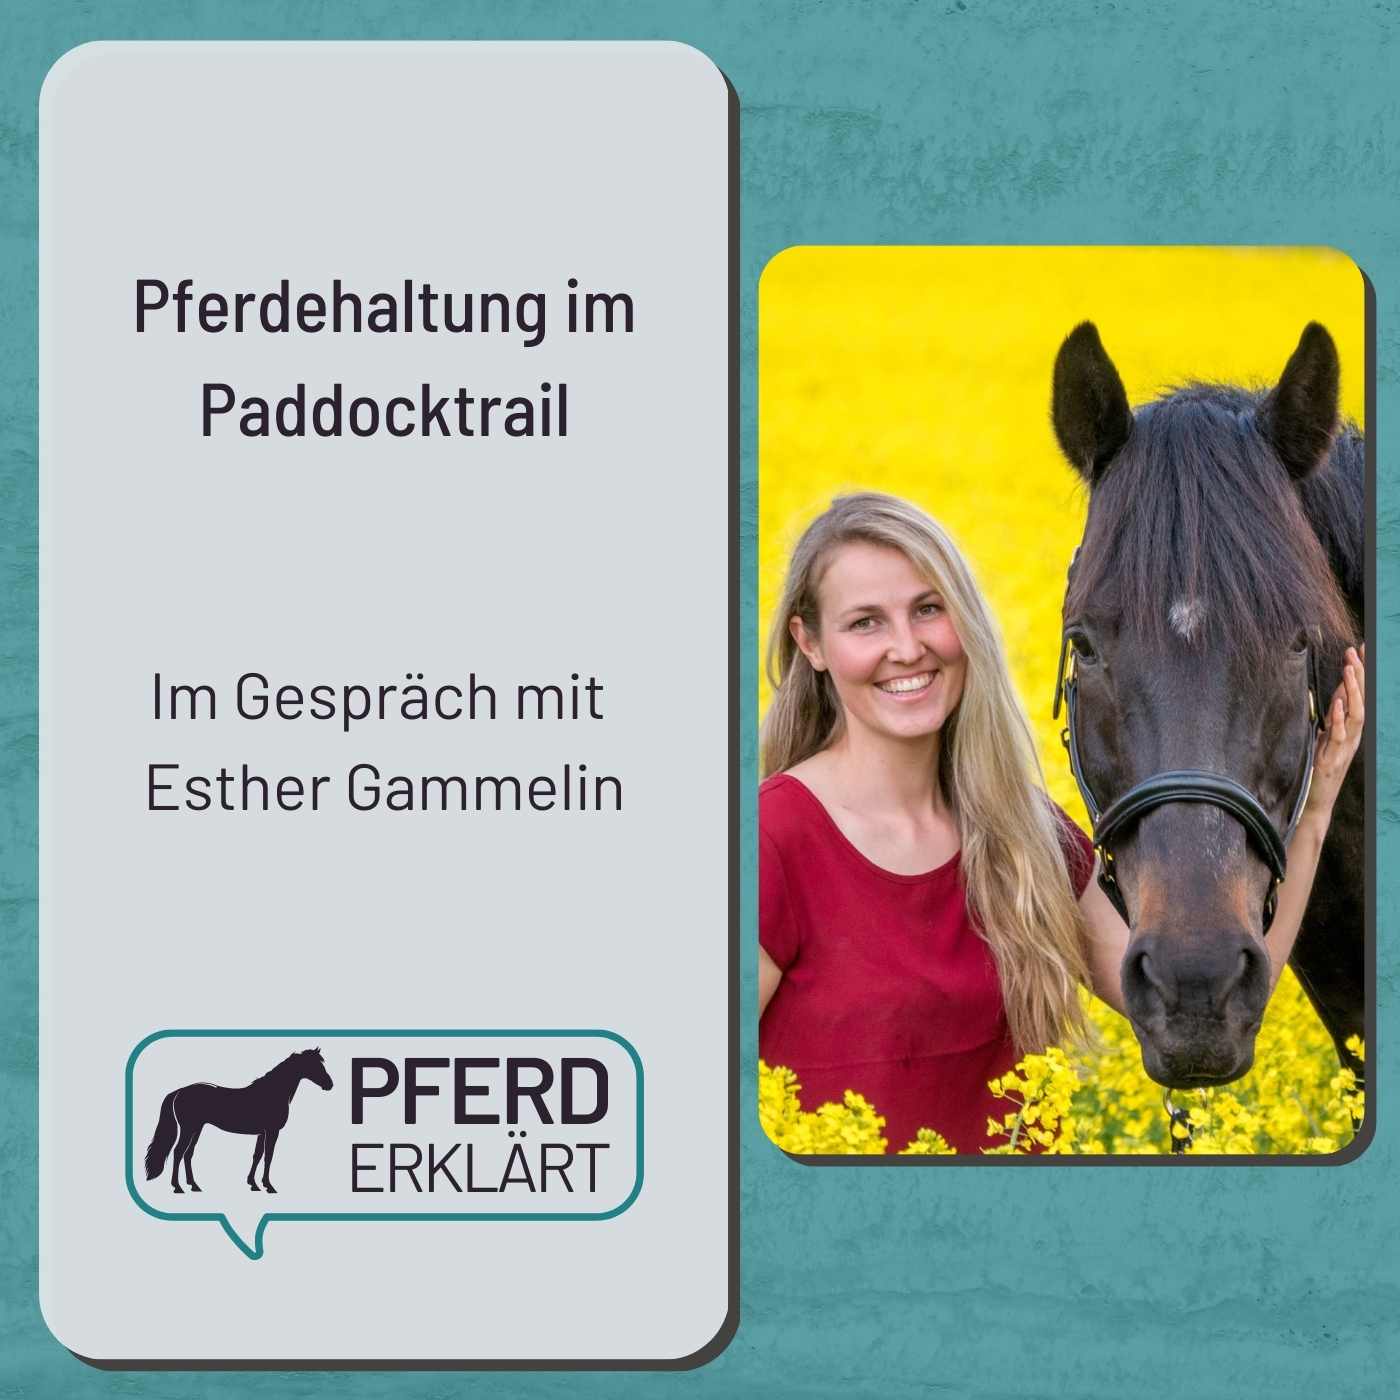 Pferdehaltung im Paddocktrail: Im Gespräch mit Esther Gammelin